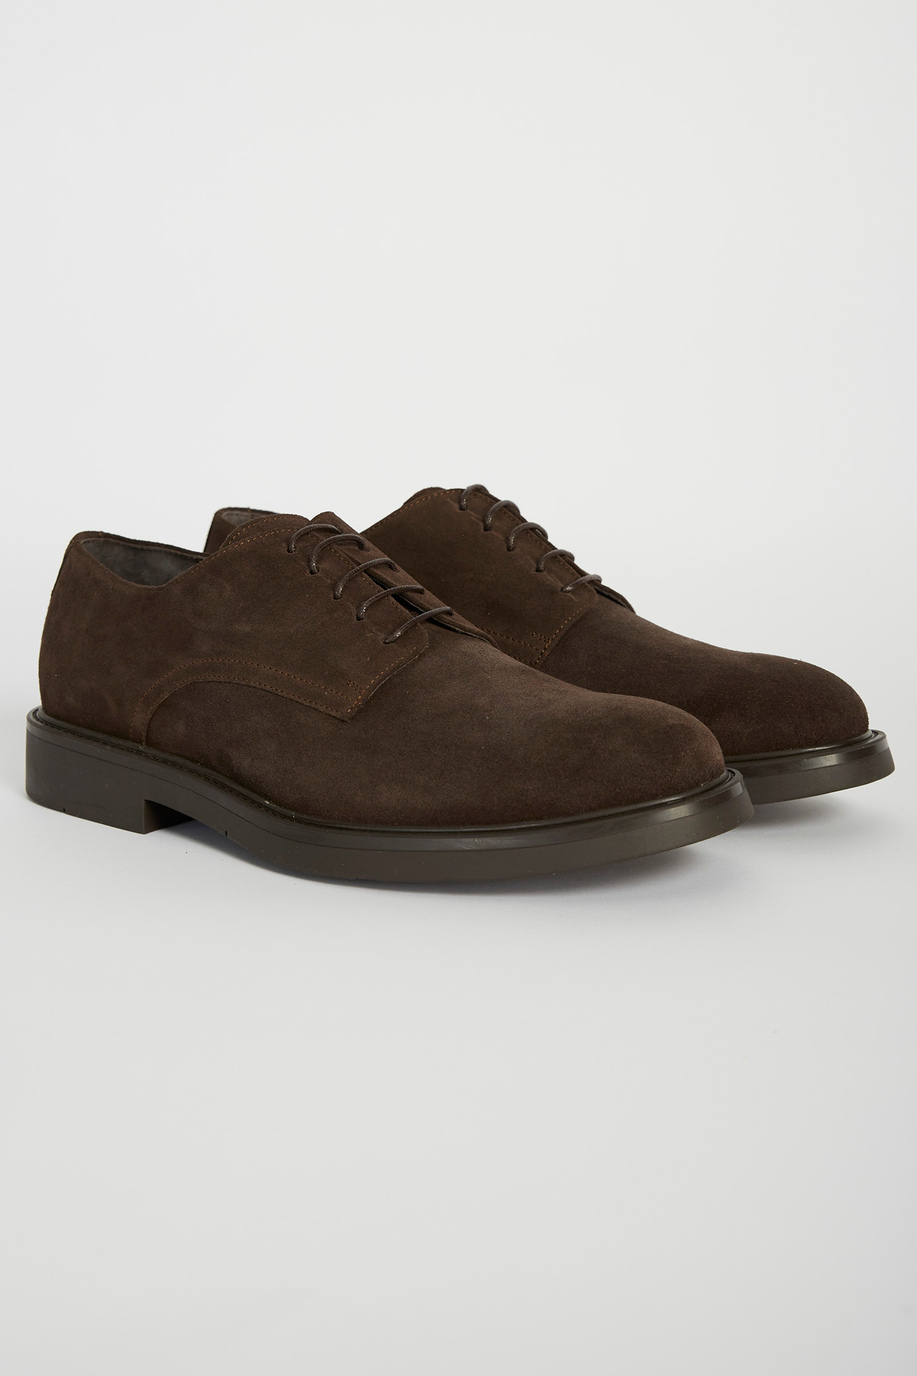 Classic leather shoe - Man shoes | La Martina - Official Online Shop